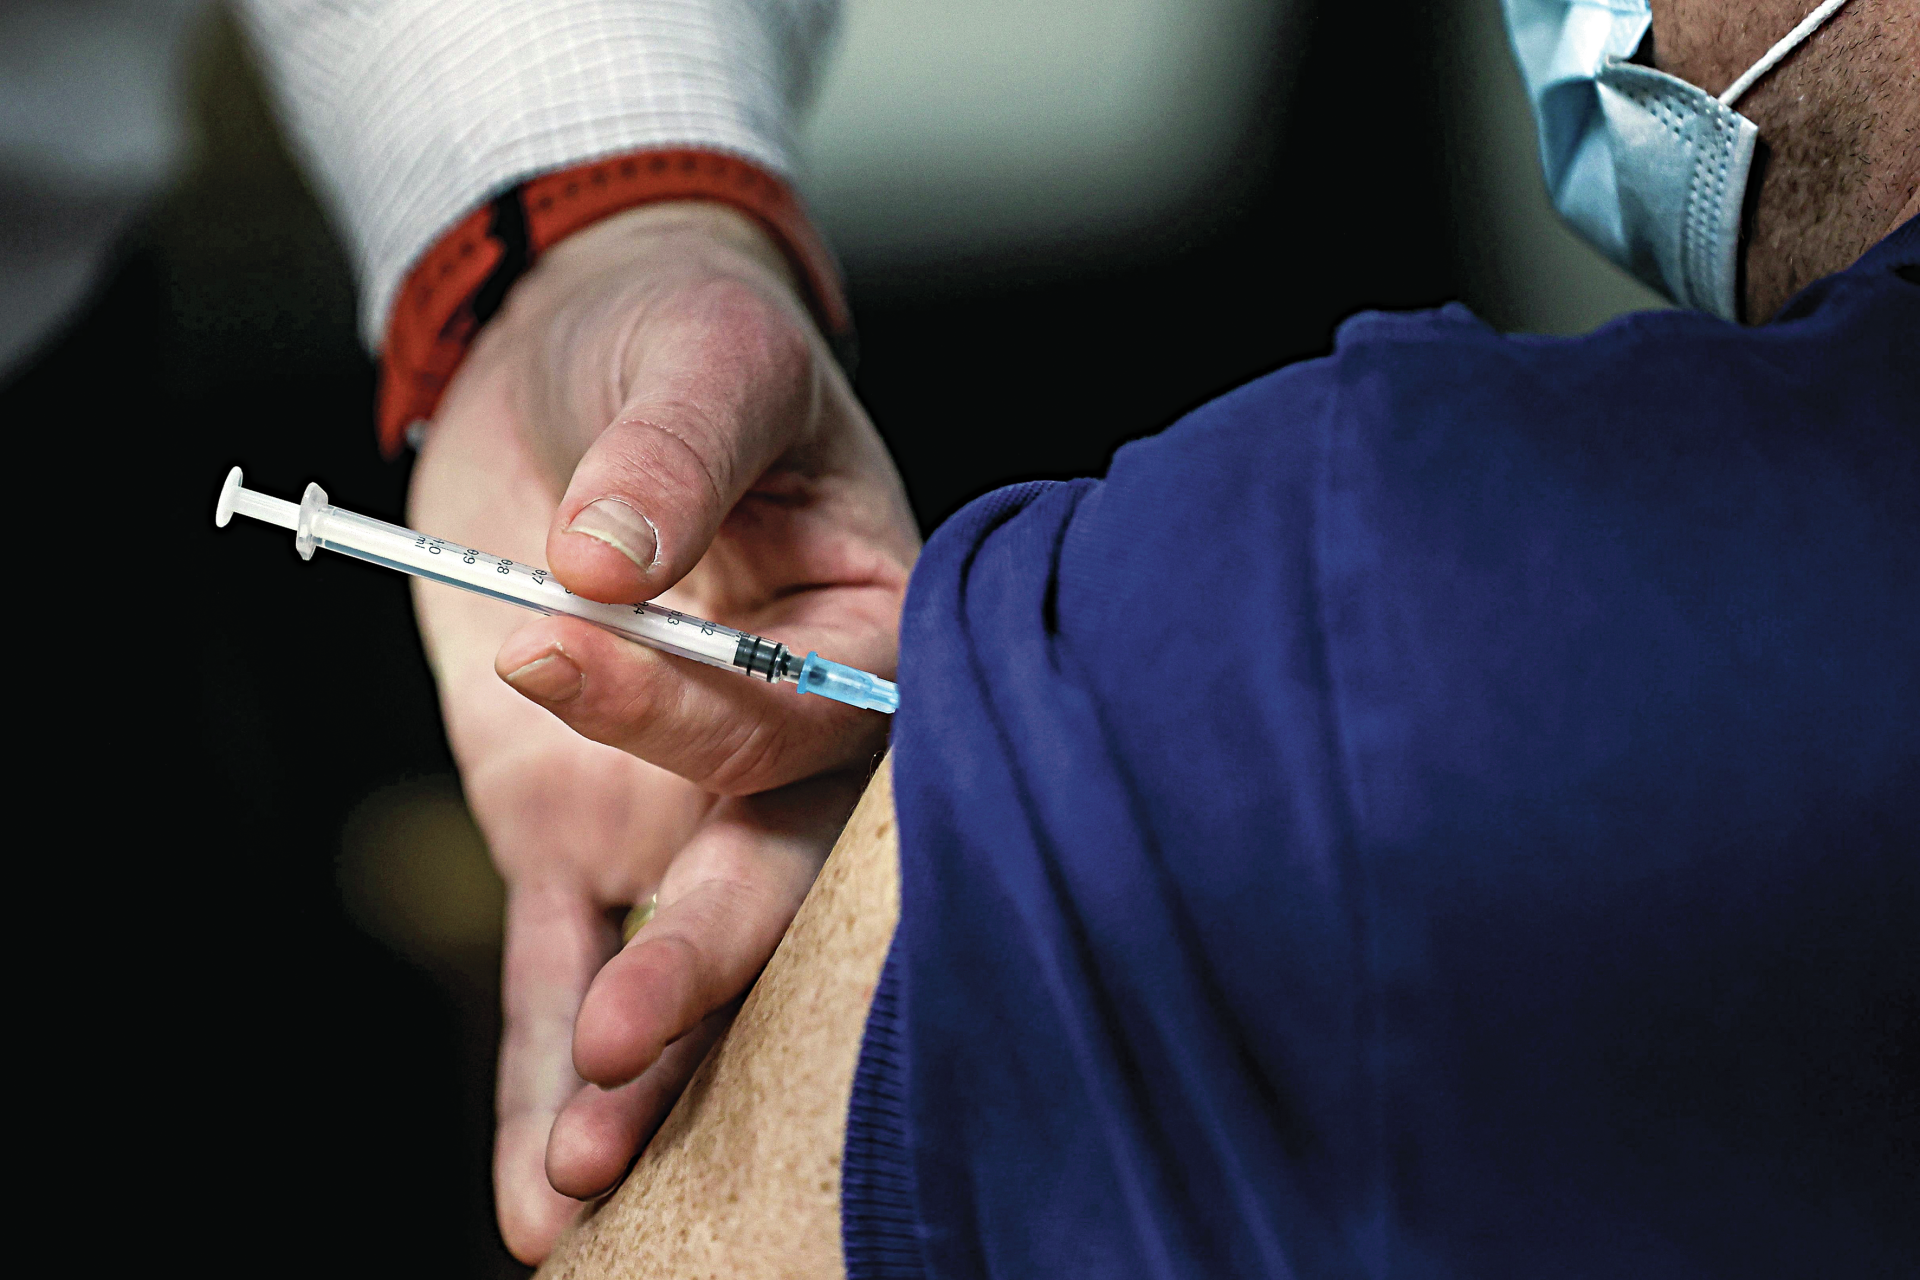 Cerca de 60 pessoas vacinadas com a mesma seringa na Áustria